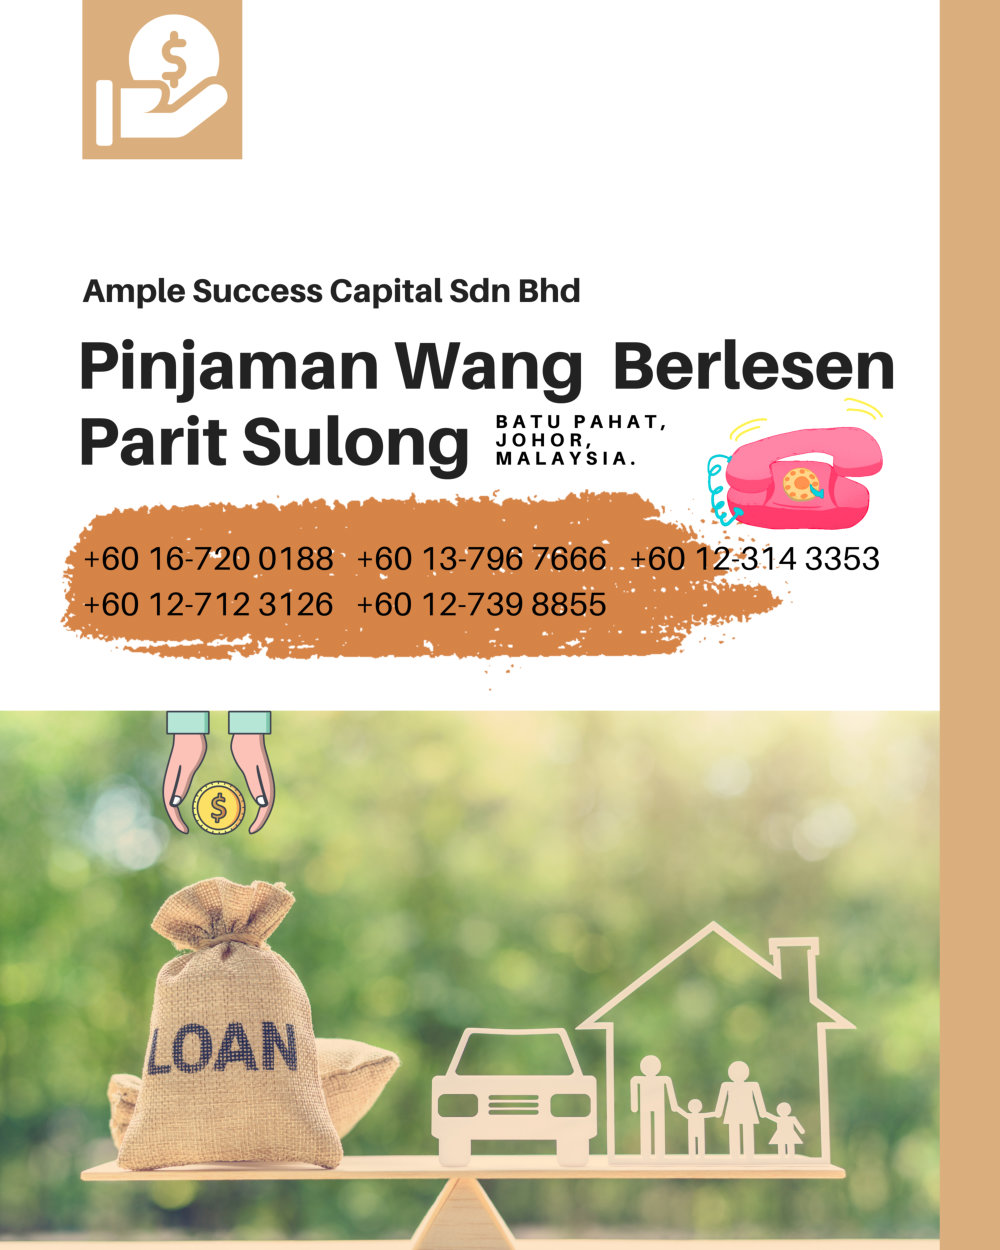 Pinjaman Wang Parit Sulong Pinjaman Wang Batu Pahat Pinjaman Wang Muar Pinjaman Wang Berlesen Parit Sulong Loan Ample Success Capital A23